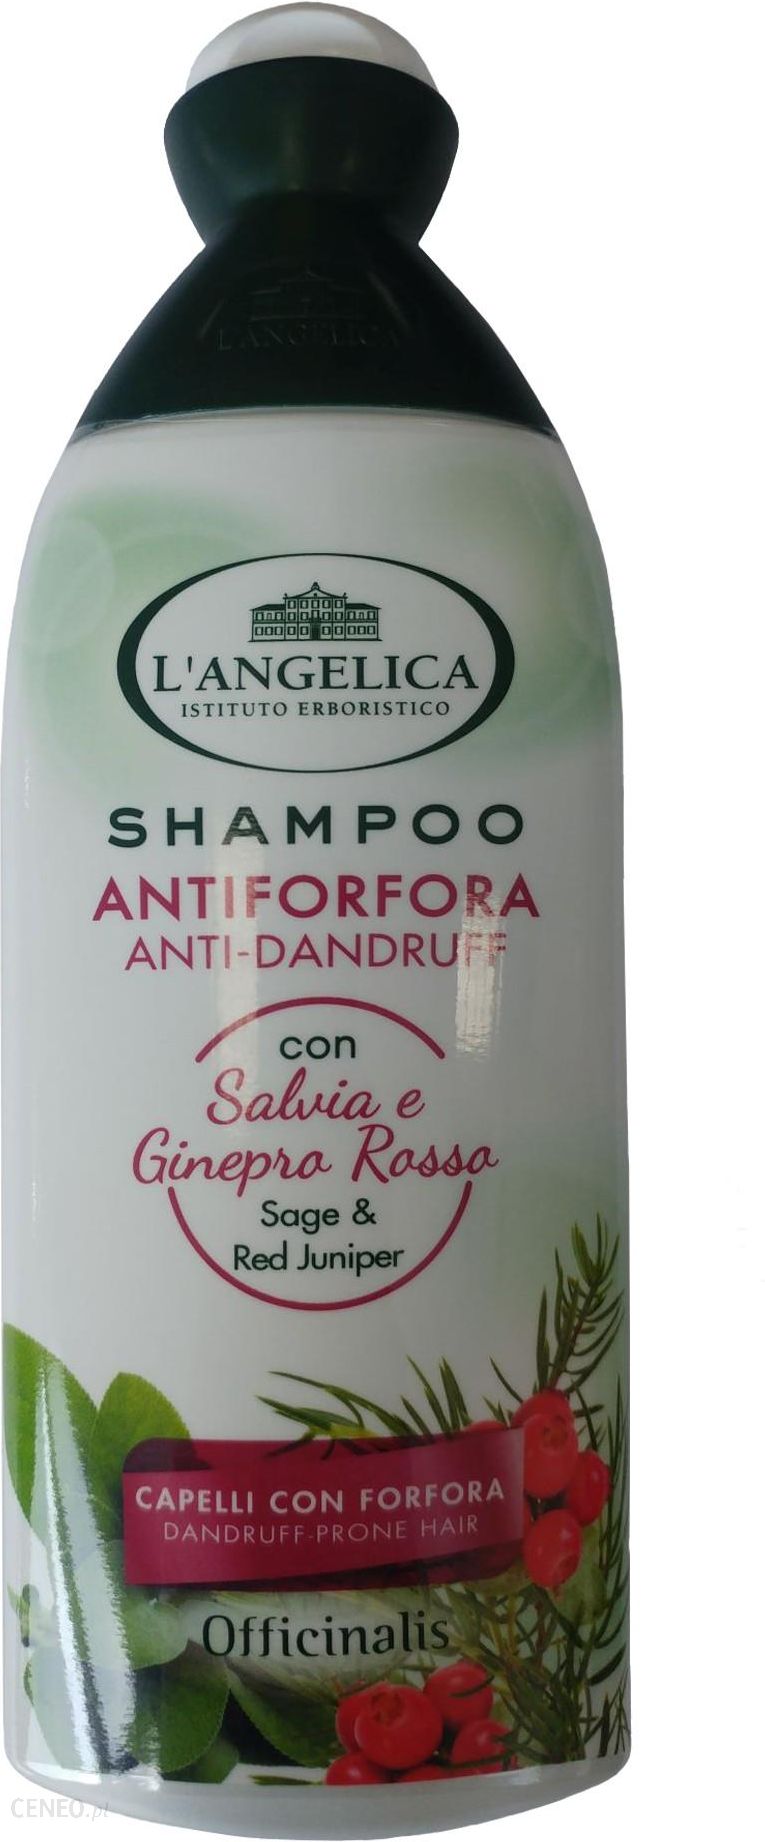 szampon do włosów langelica